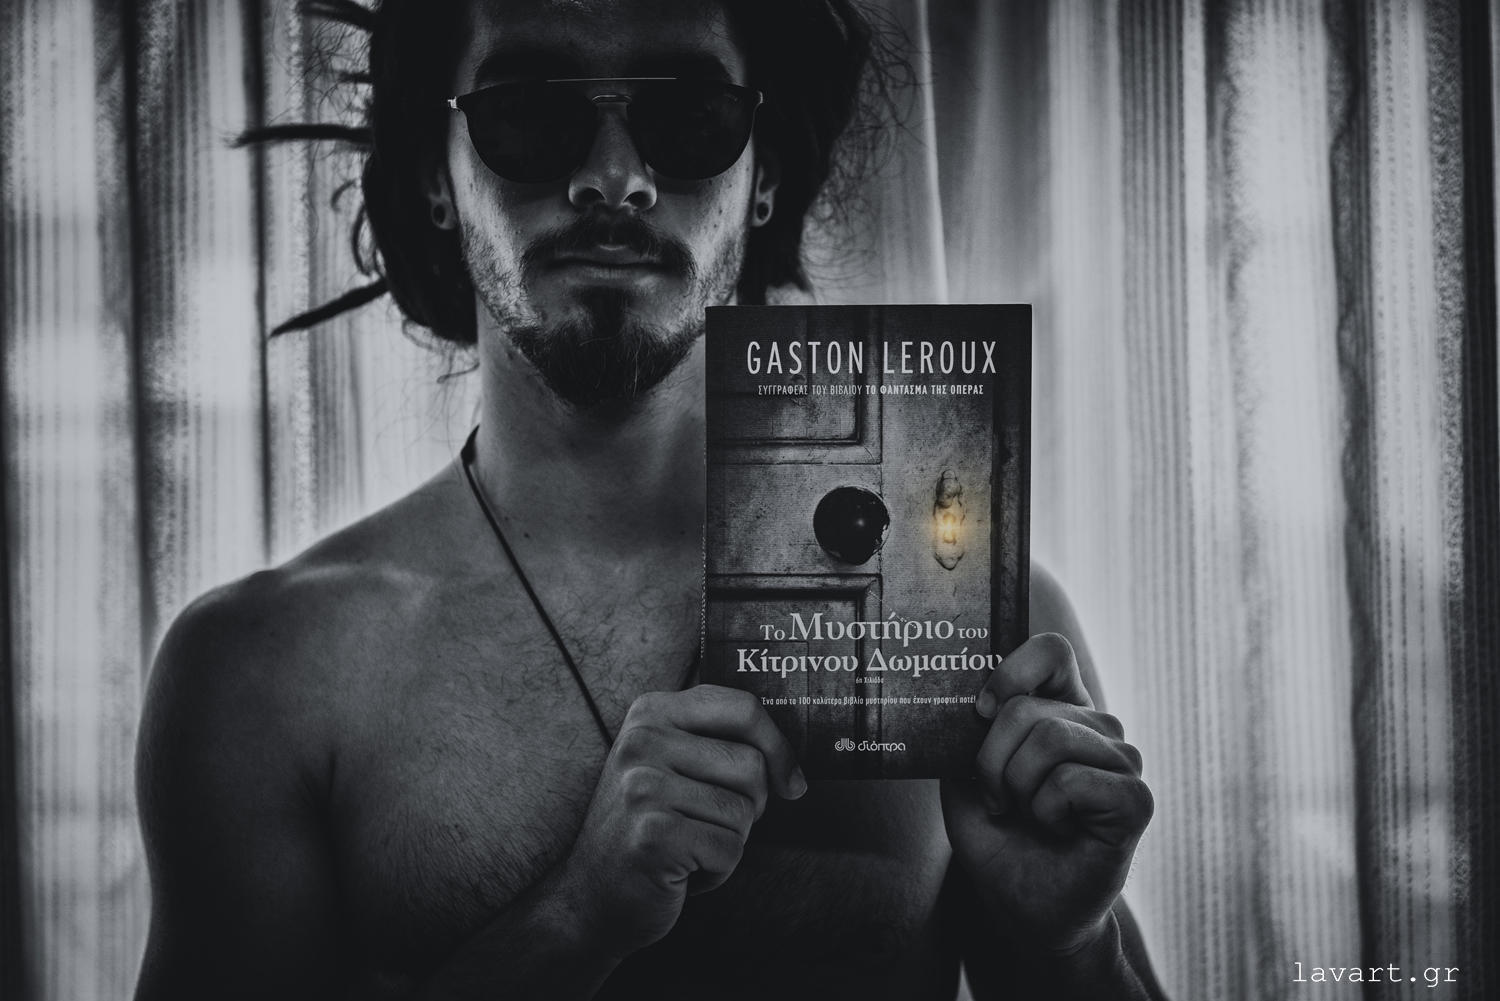 Σελιδοδείκτης: Το μυστήριο του κίτρινου δωματίου, του Gaston Leroux